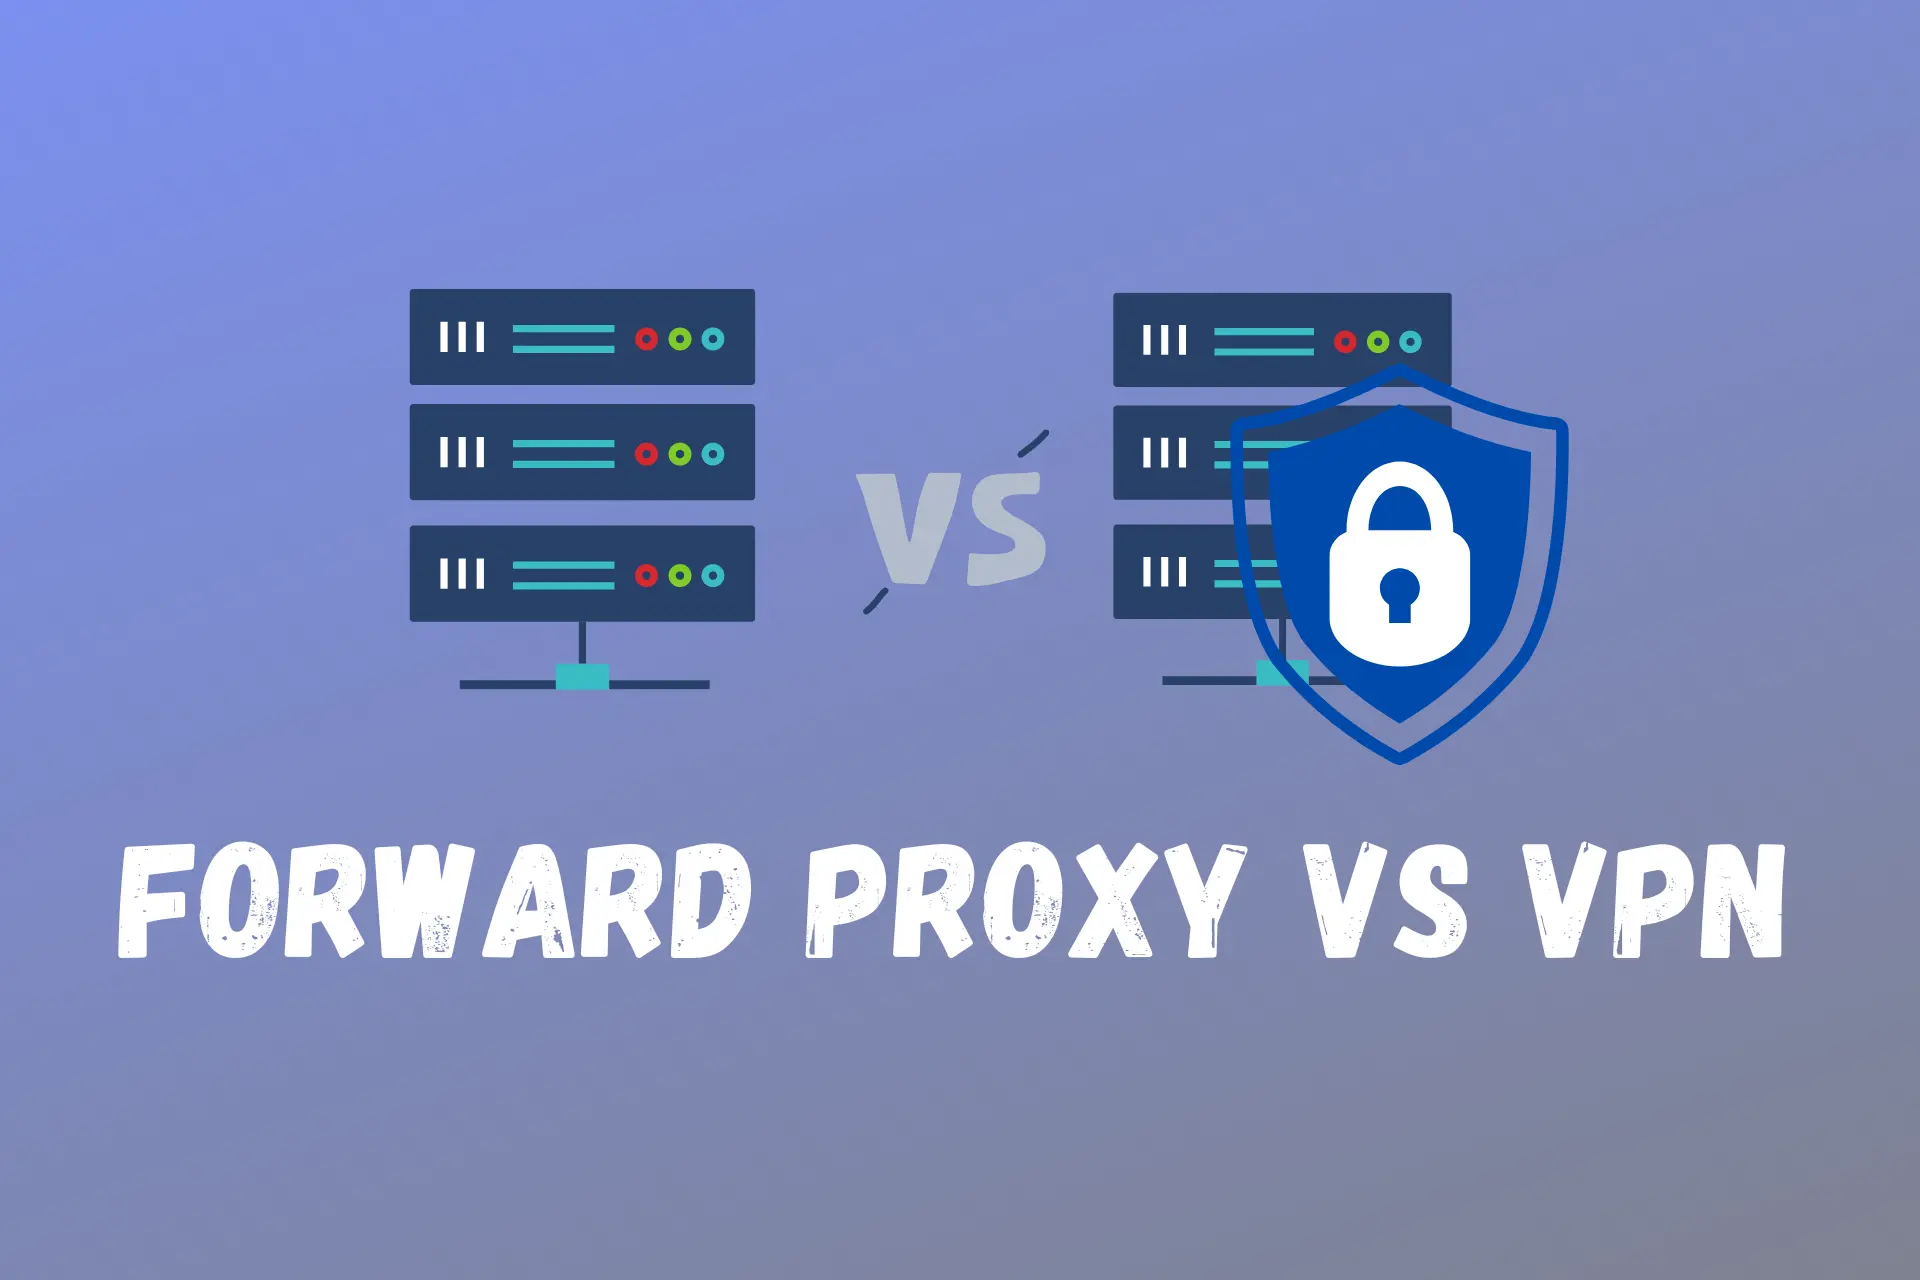 vpn vs forward proxy